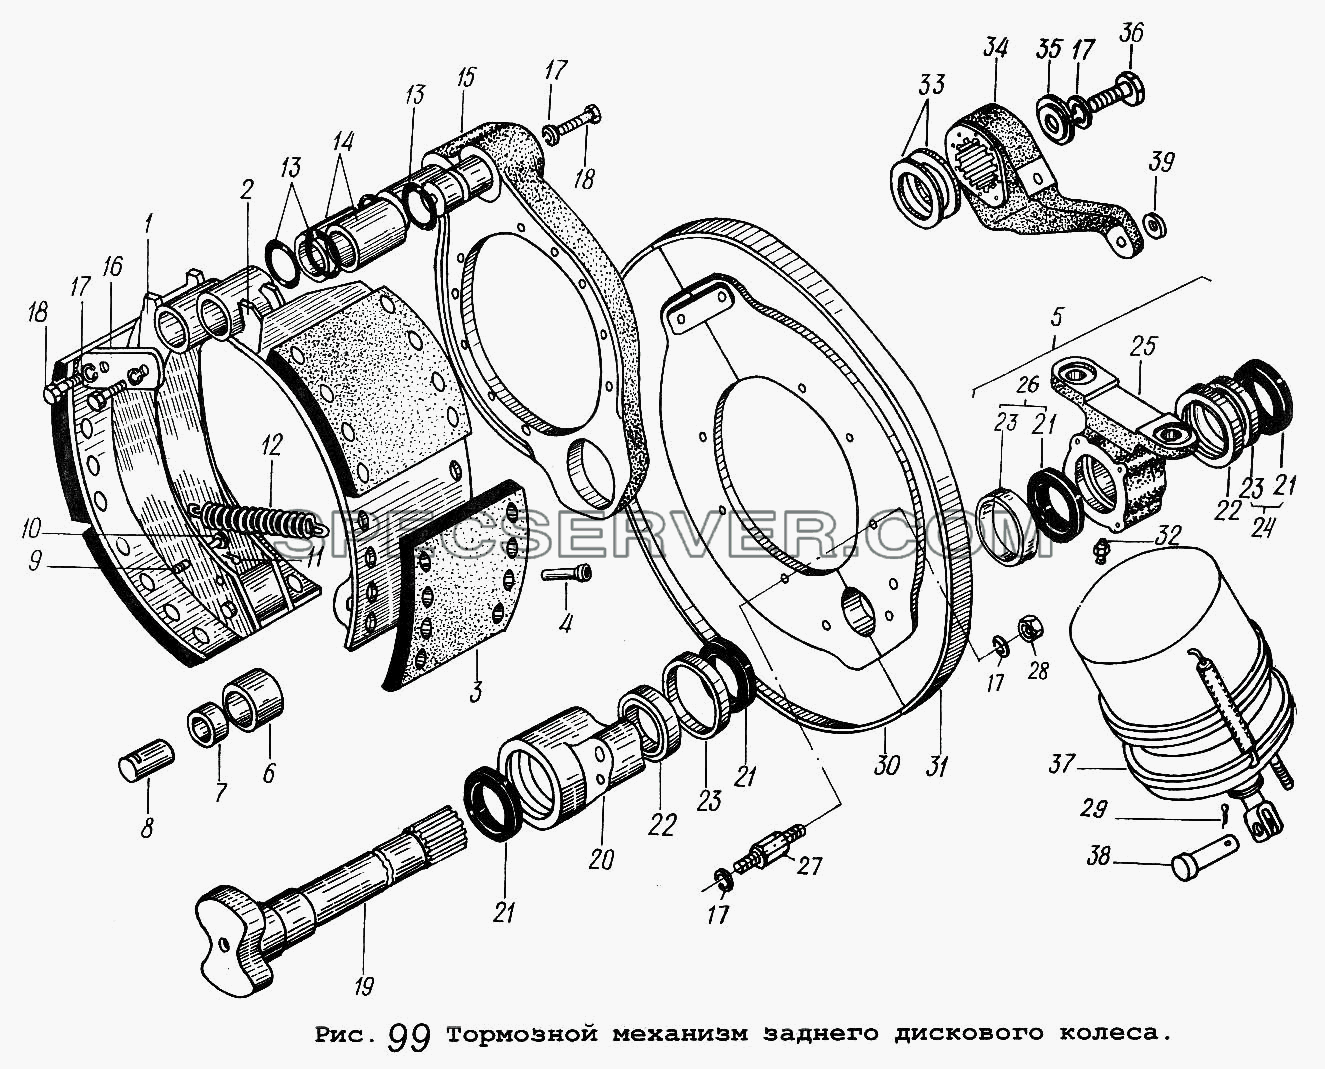 Тормозной механизм заднего дискового колеса для МАЗ-54323 (список запасных частей)